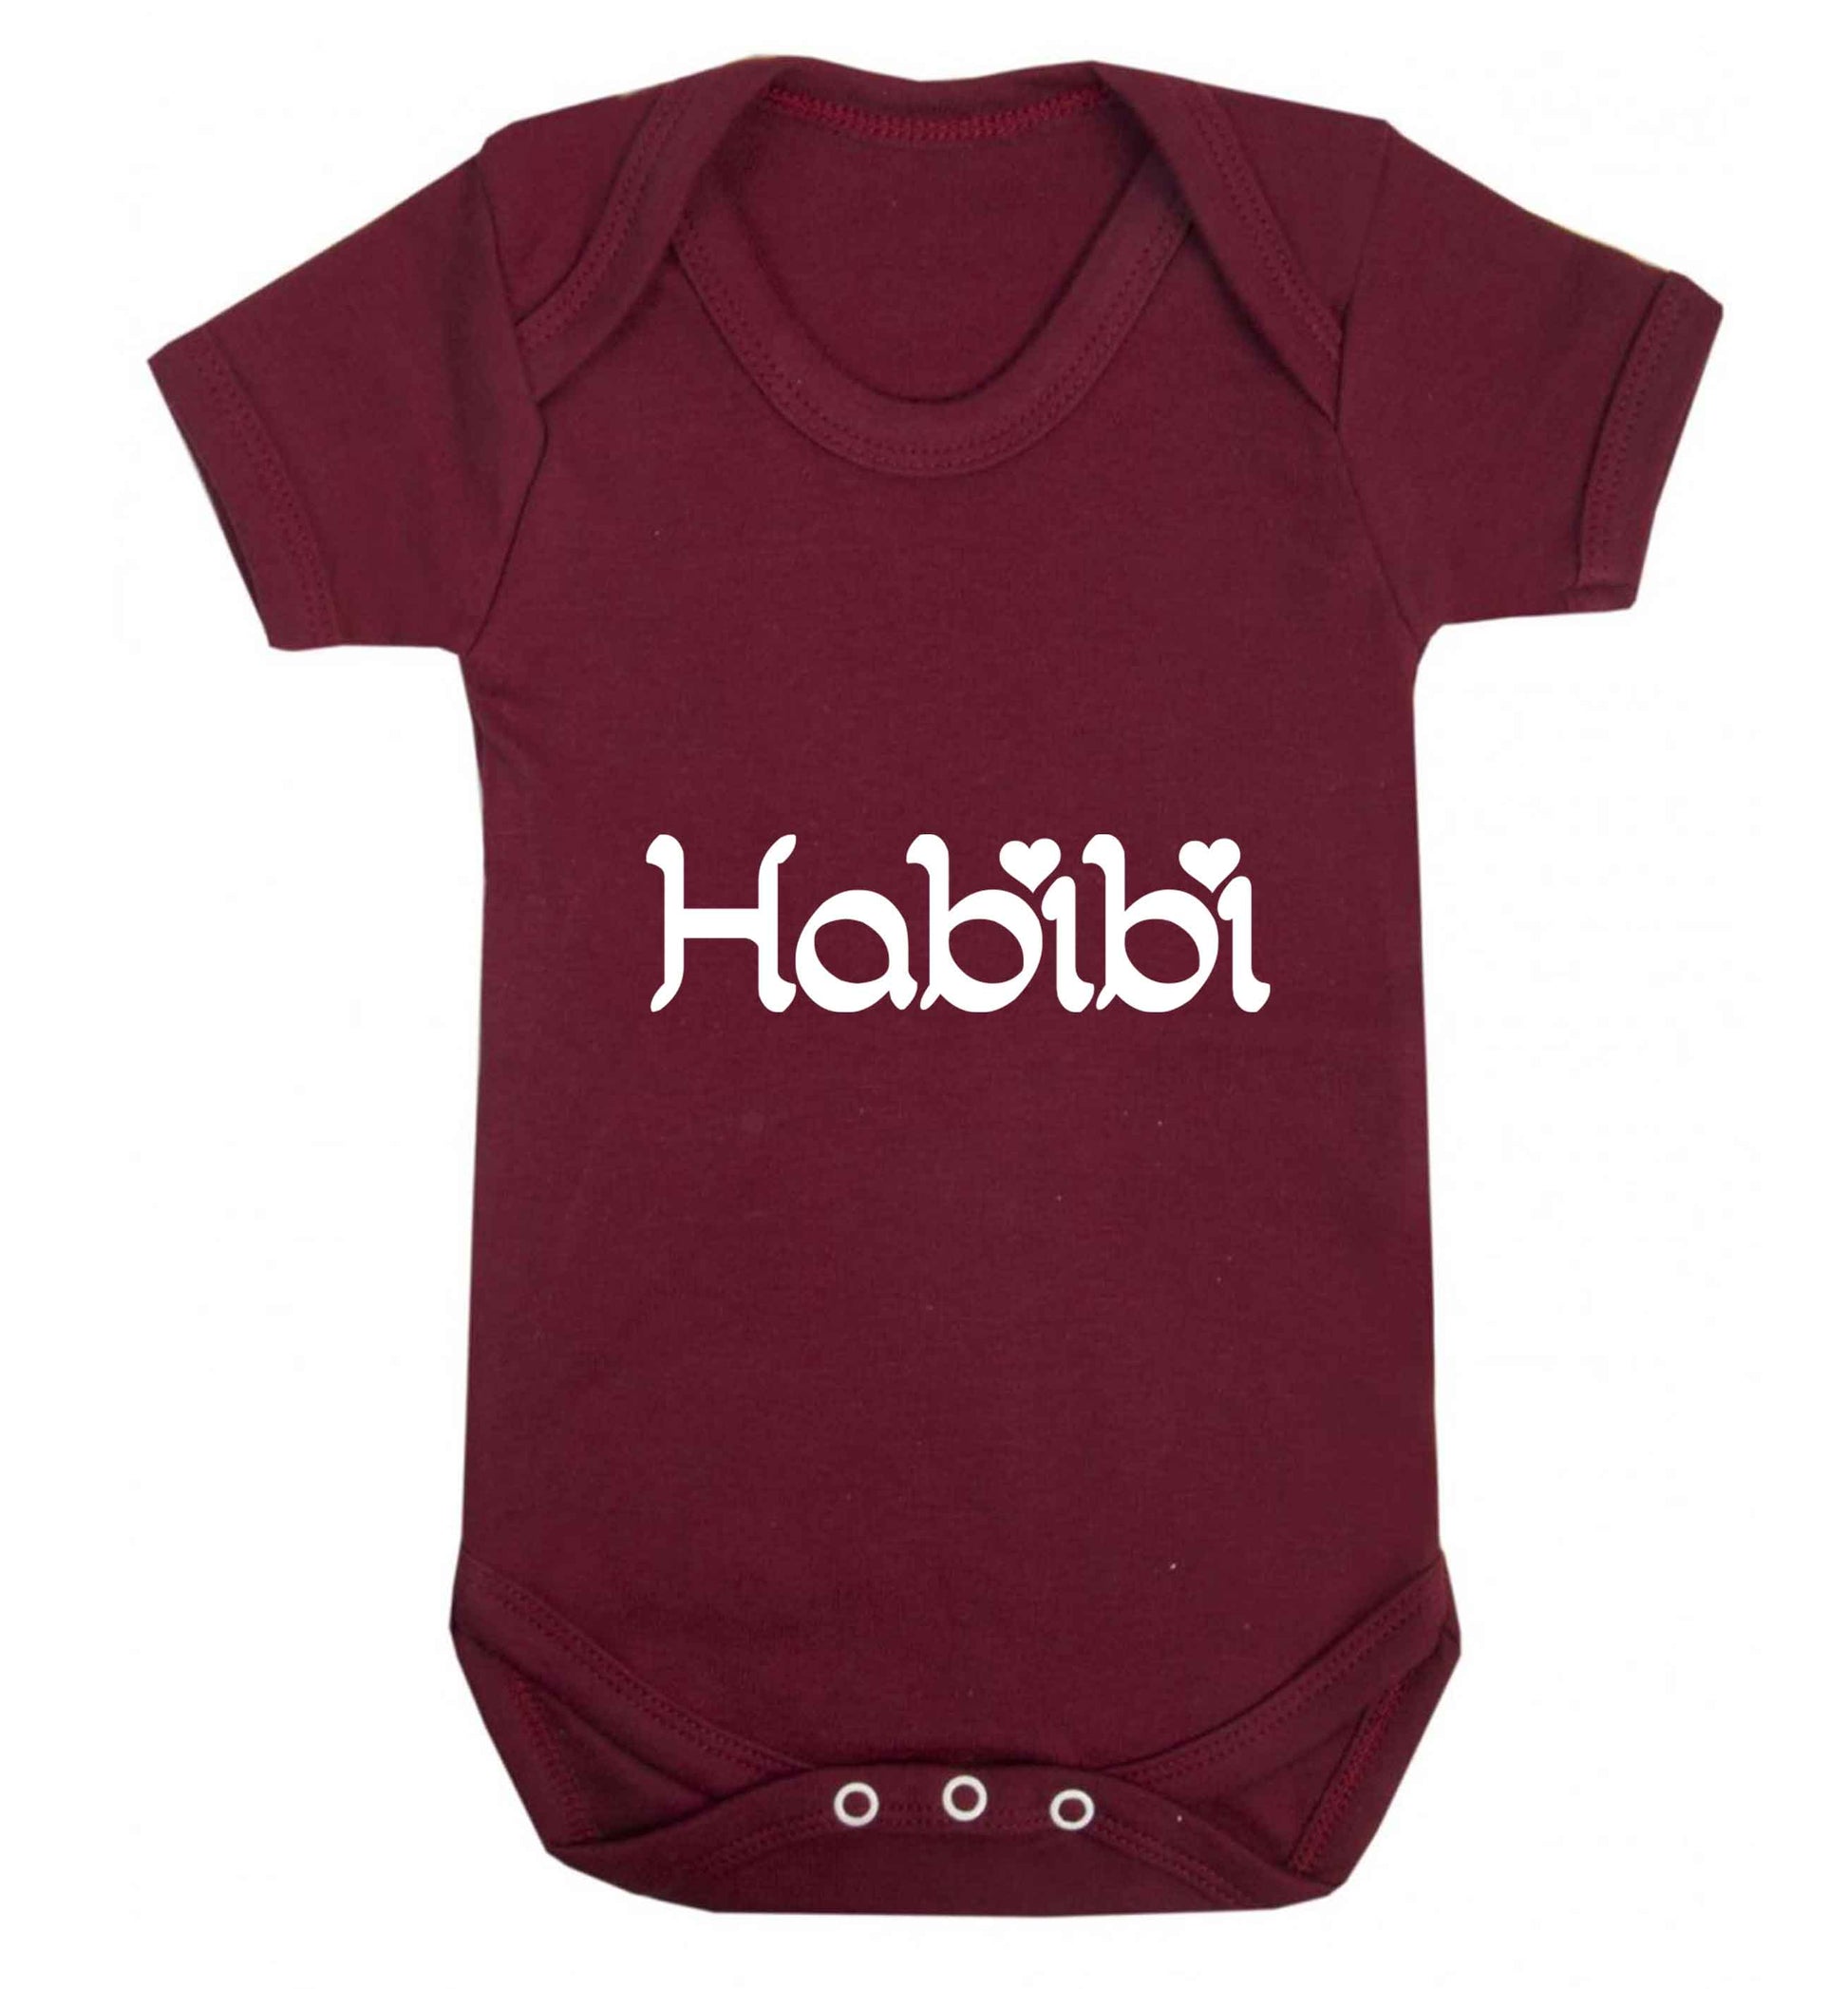 Habibi baby vest maroon 18-24 months